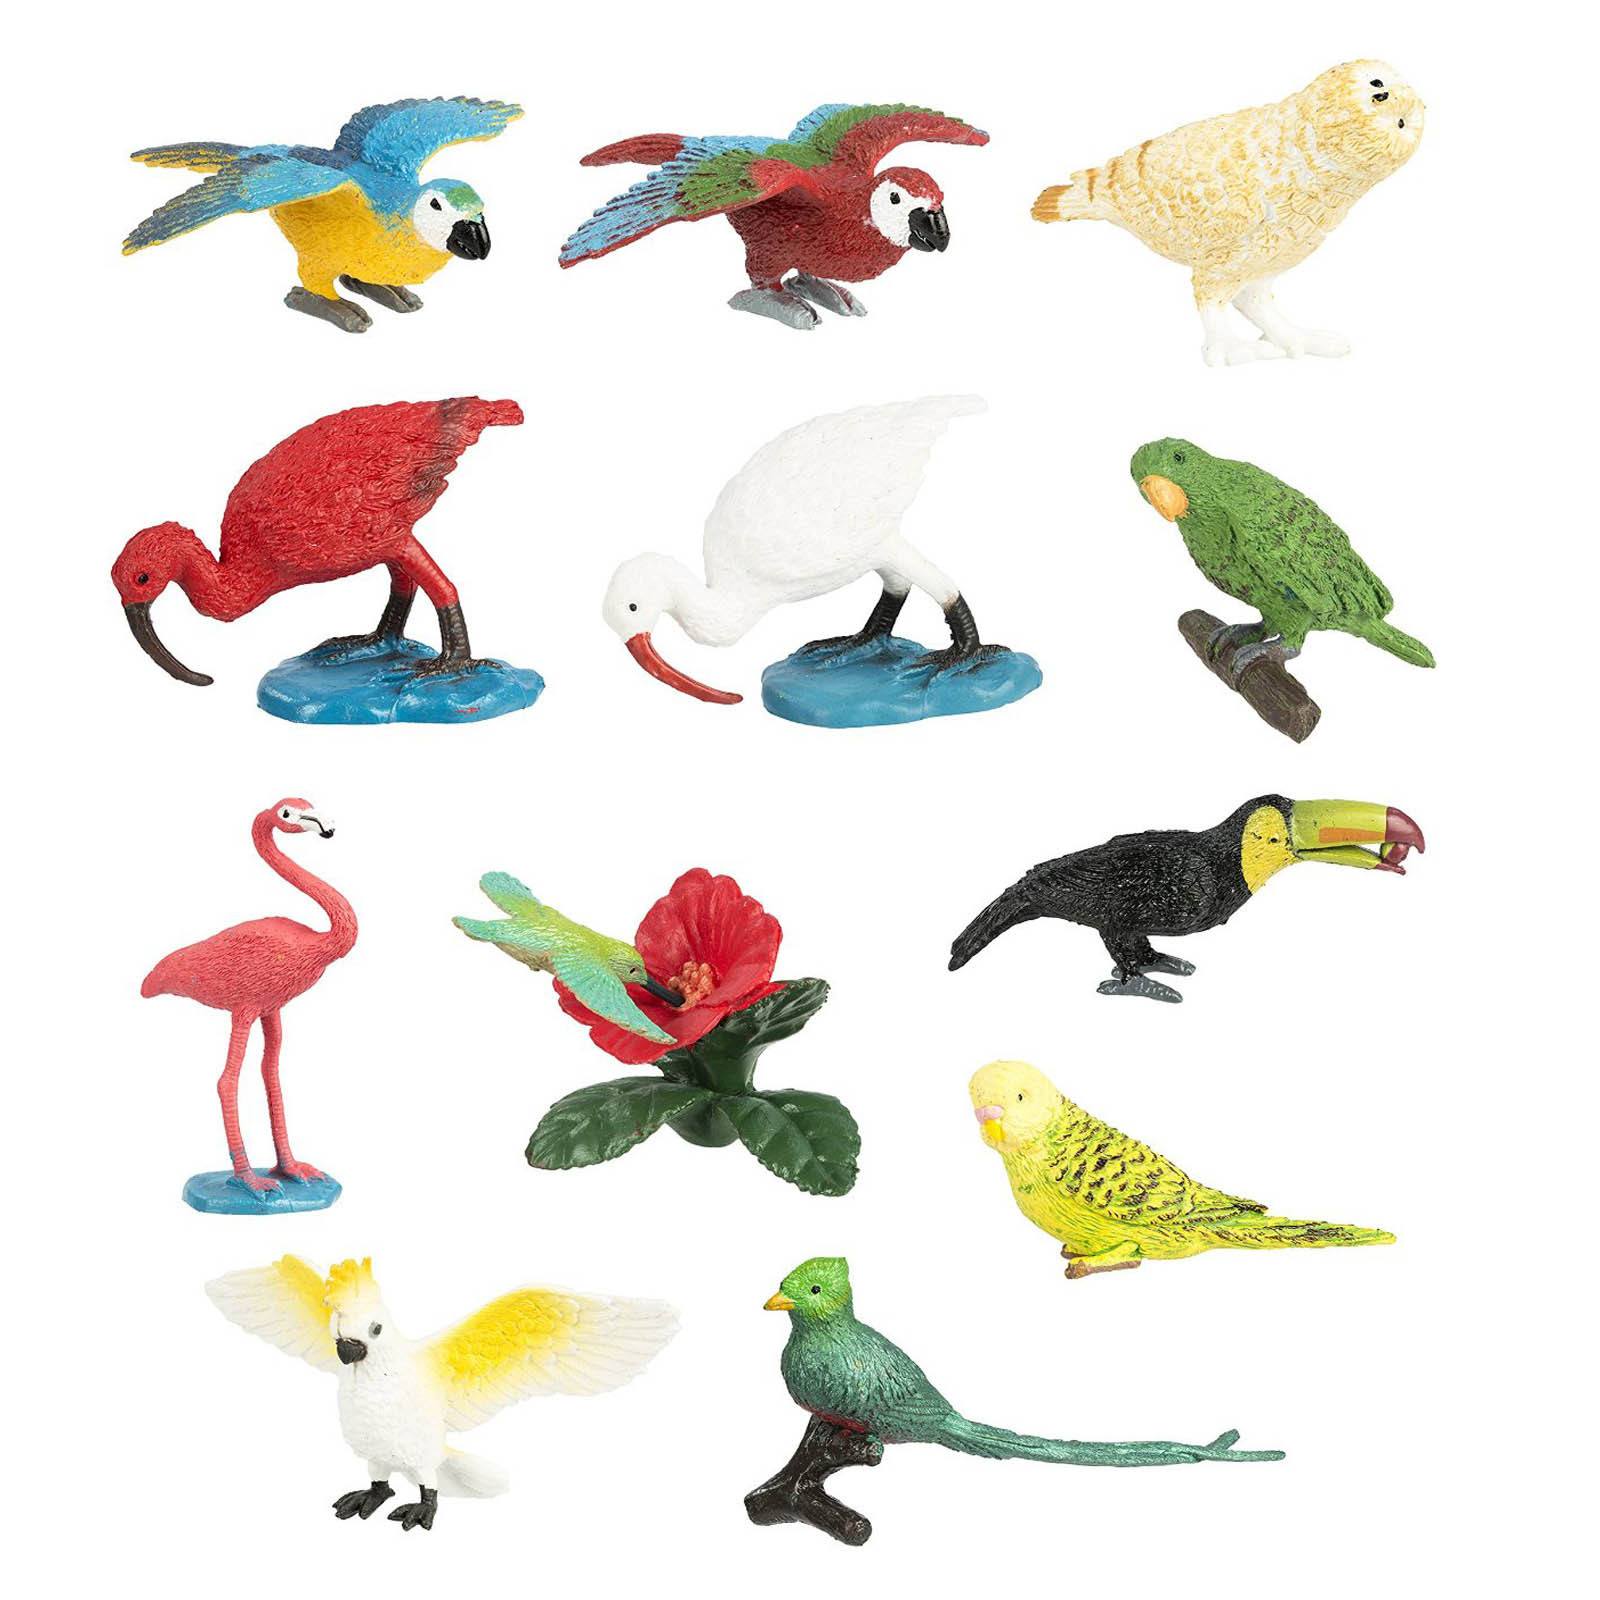 Safari Ltd: figurki w tubie ptaki Exotic Birds Toob 11 szt.